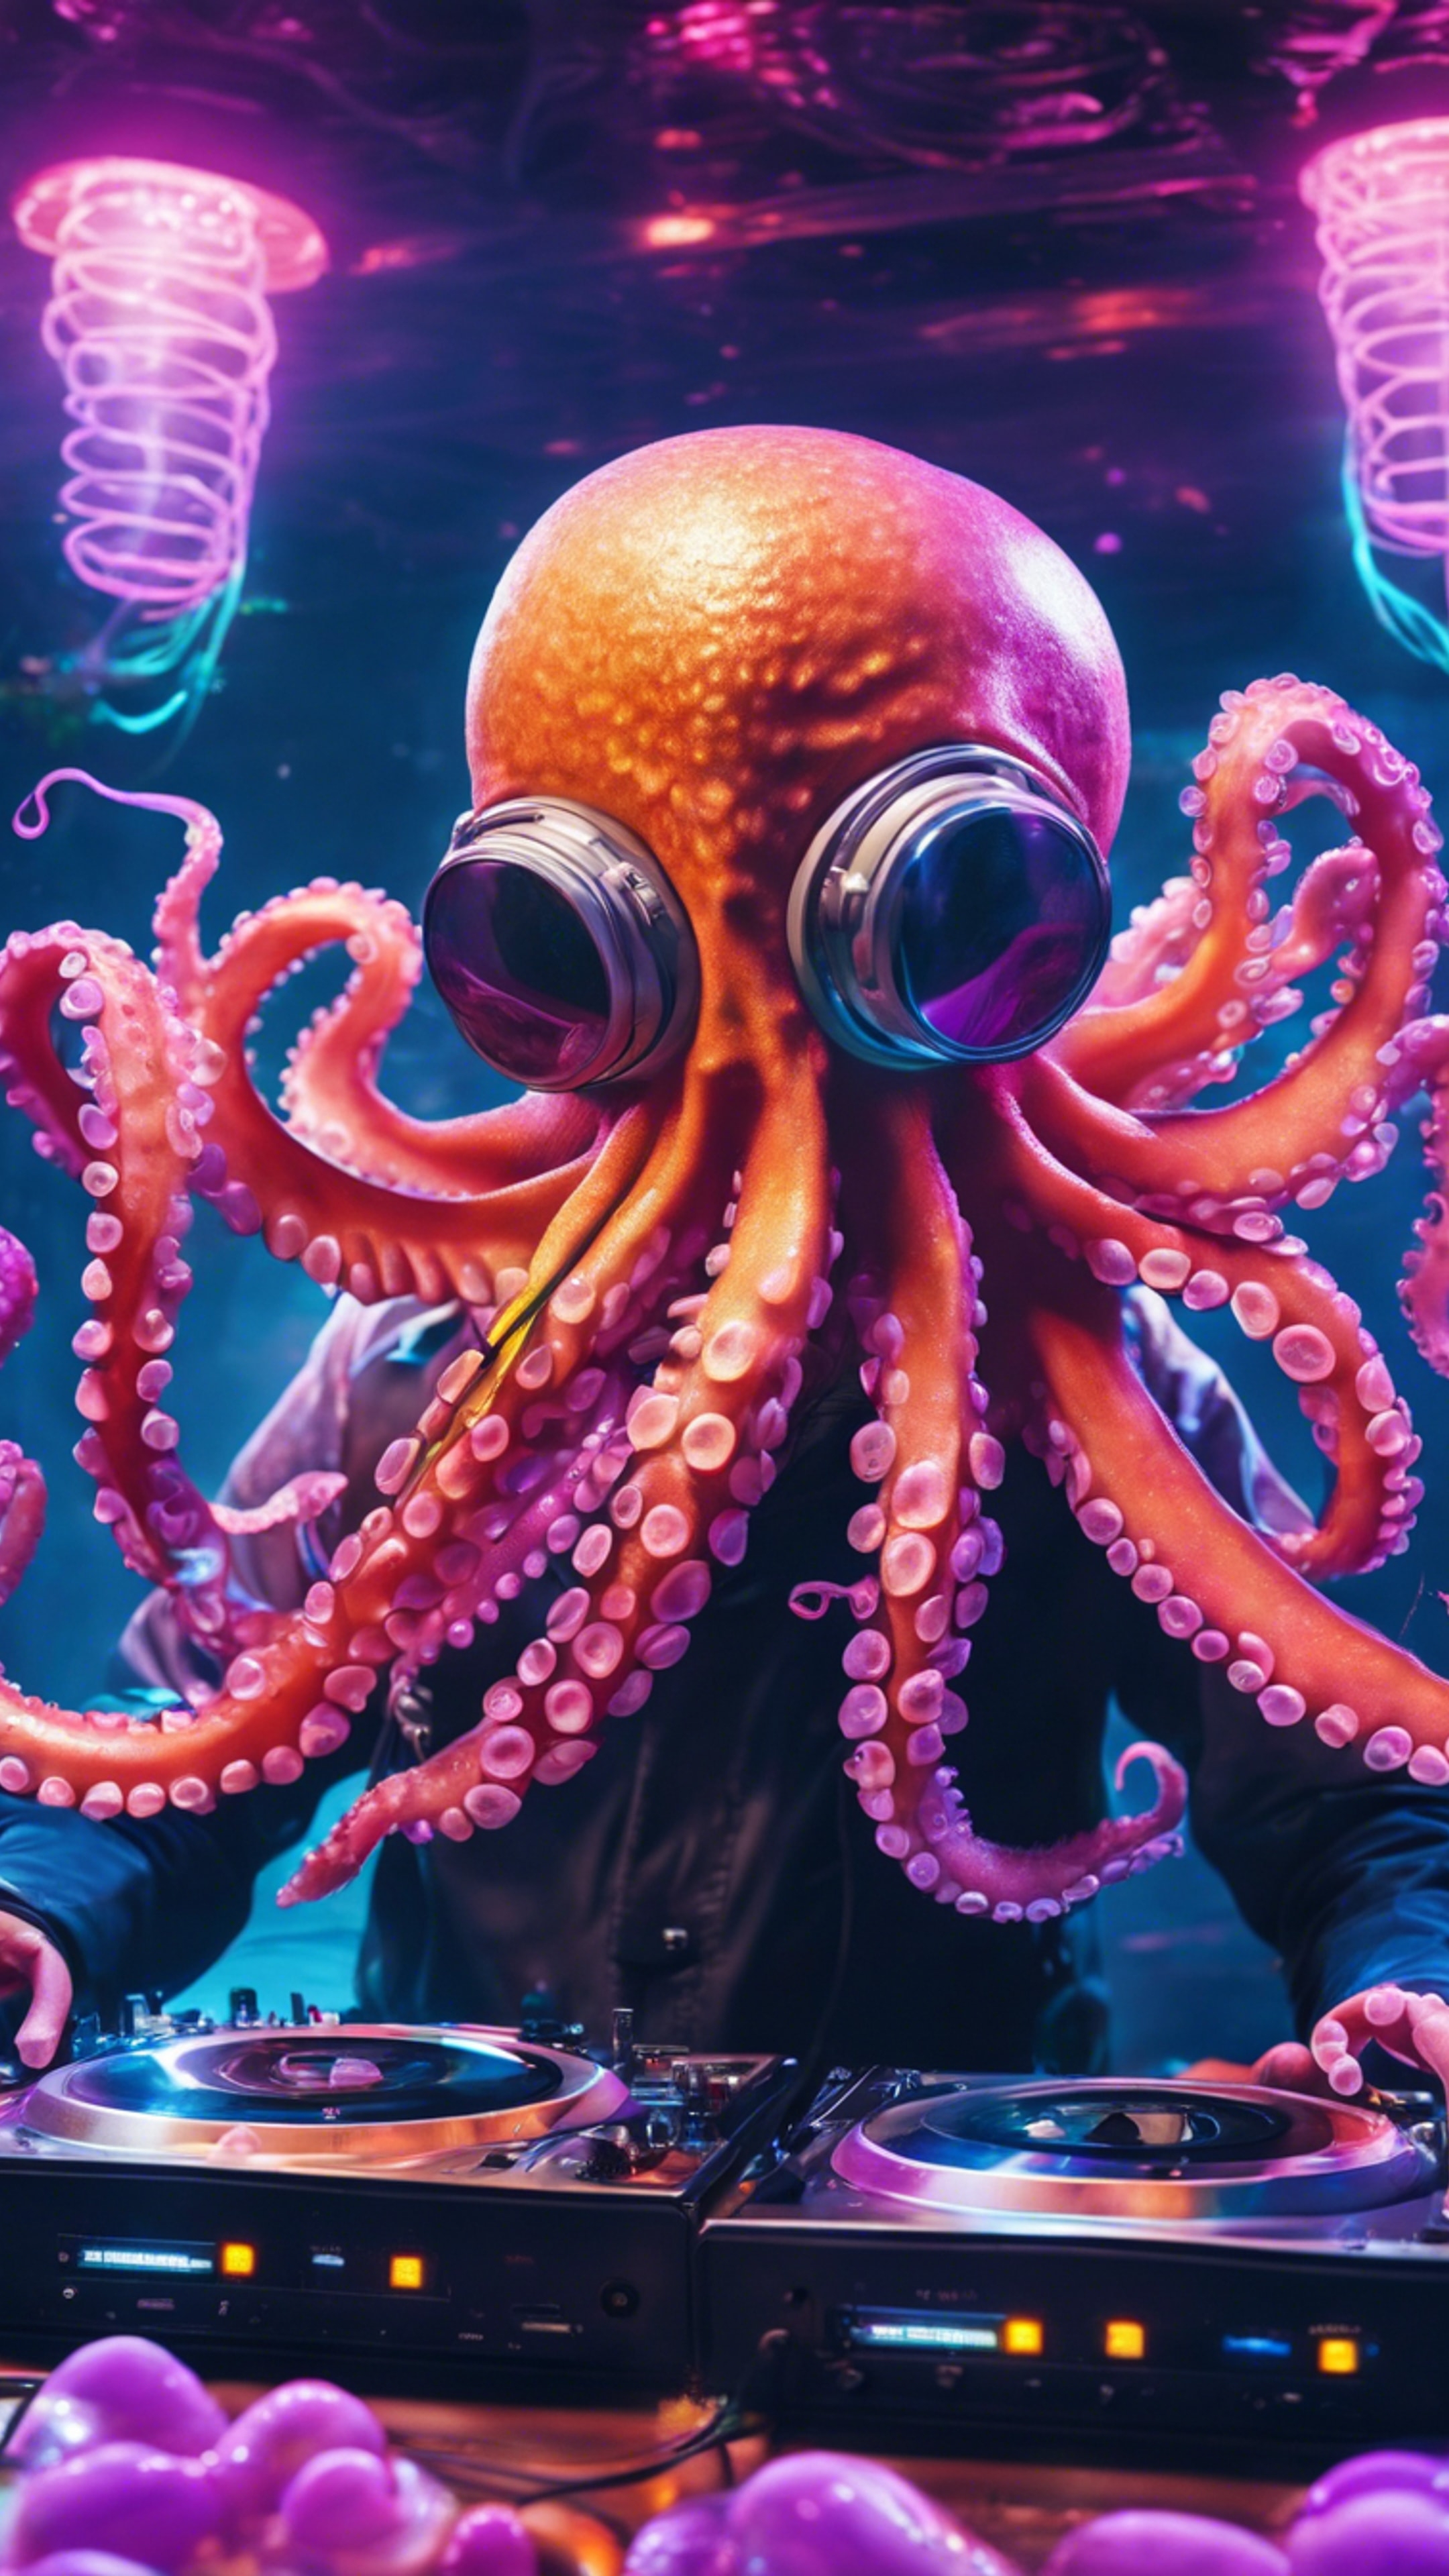 An octopus DJ controlling the music at an underwater rave amidst neon jellyfish. Divar kağızı[8d0f478d59094f5192d2]